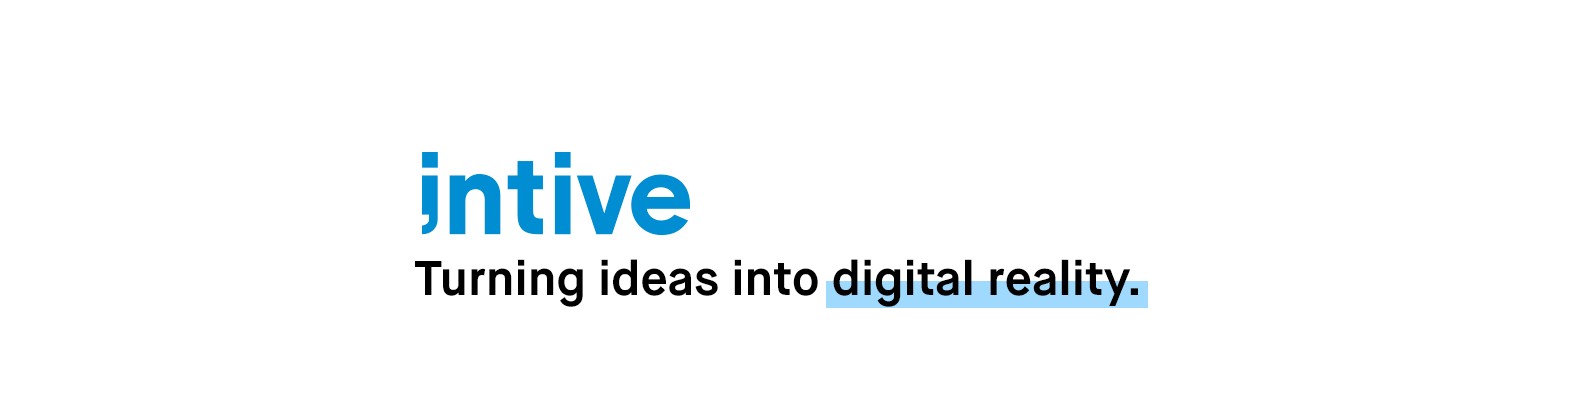 Intive Linkedin Savesave intive studio for later. intive linkedin